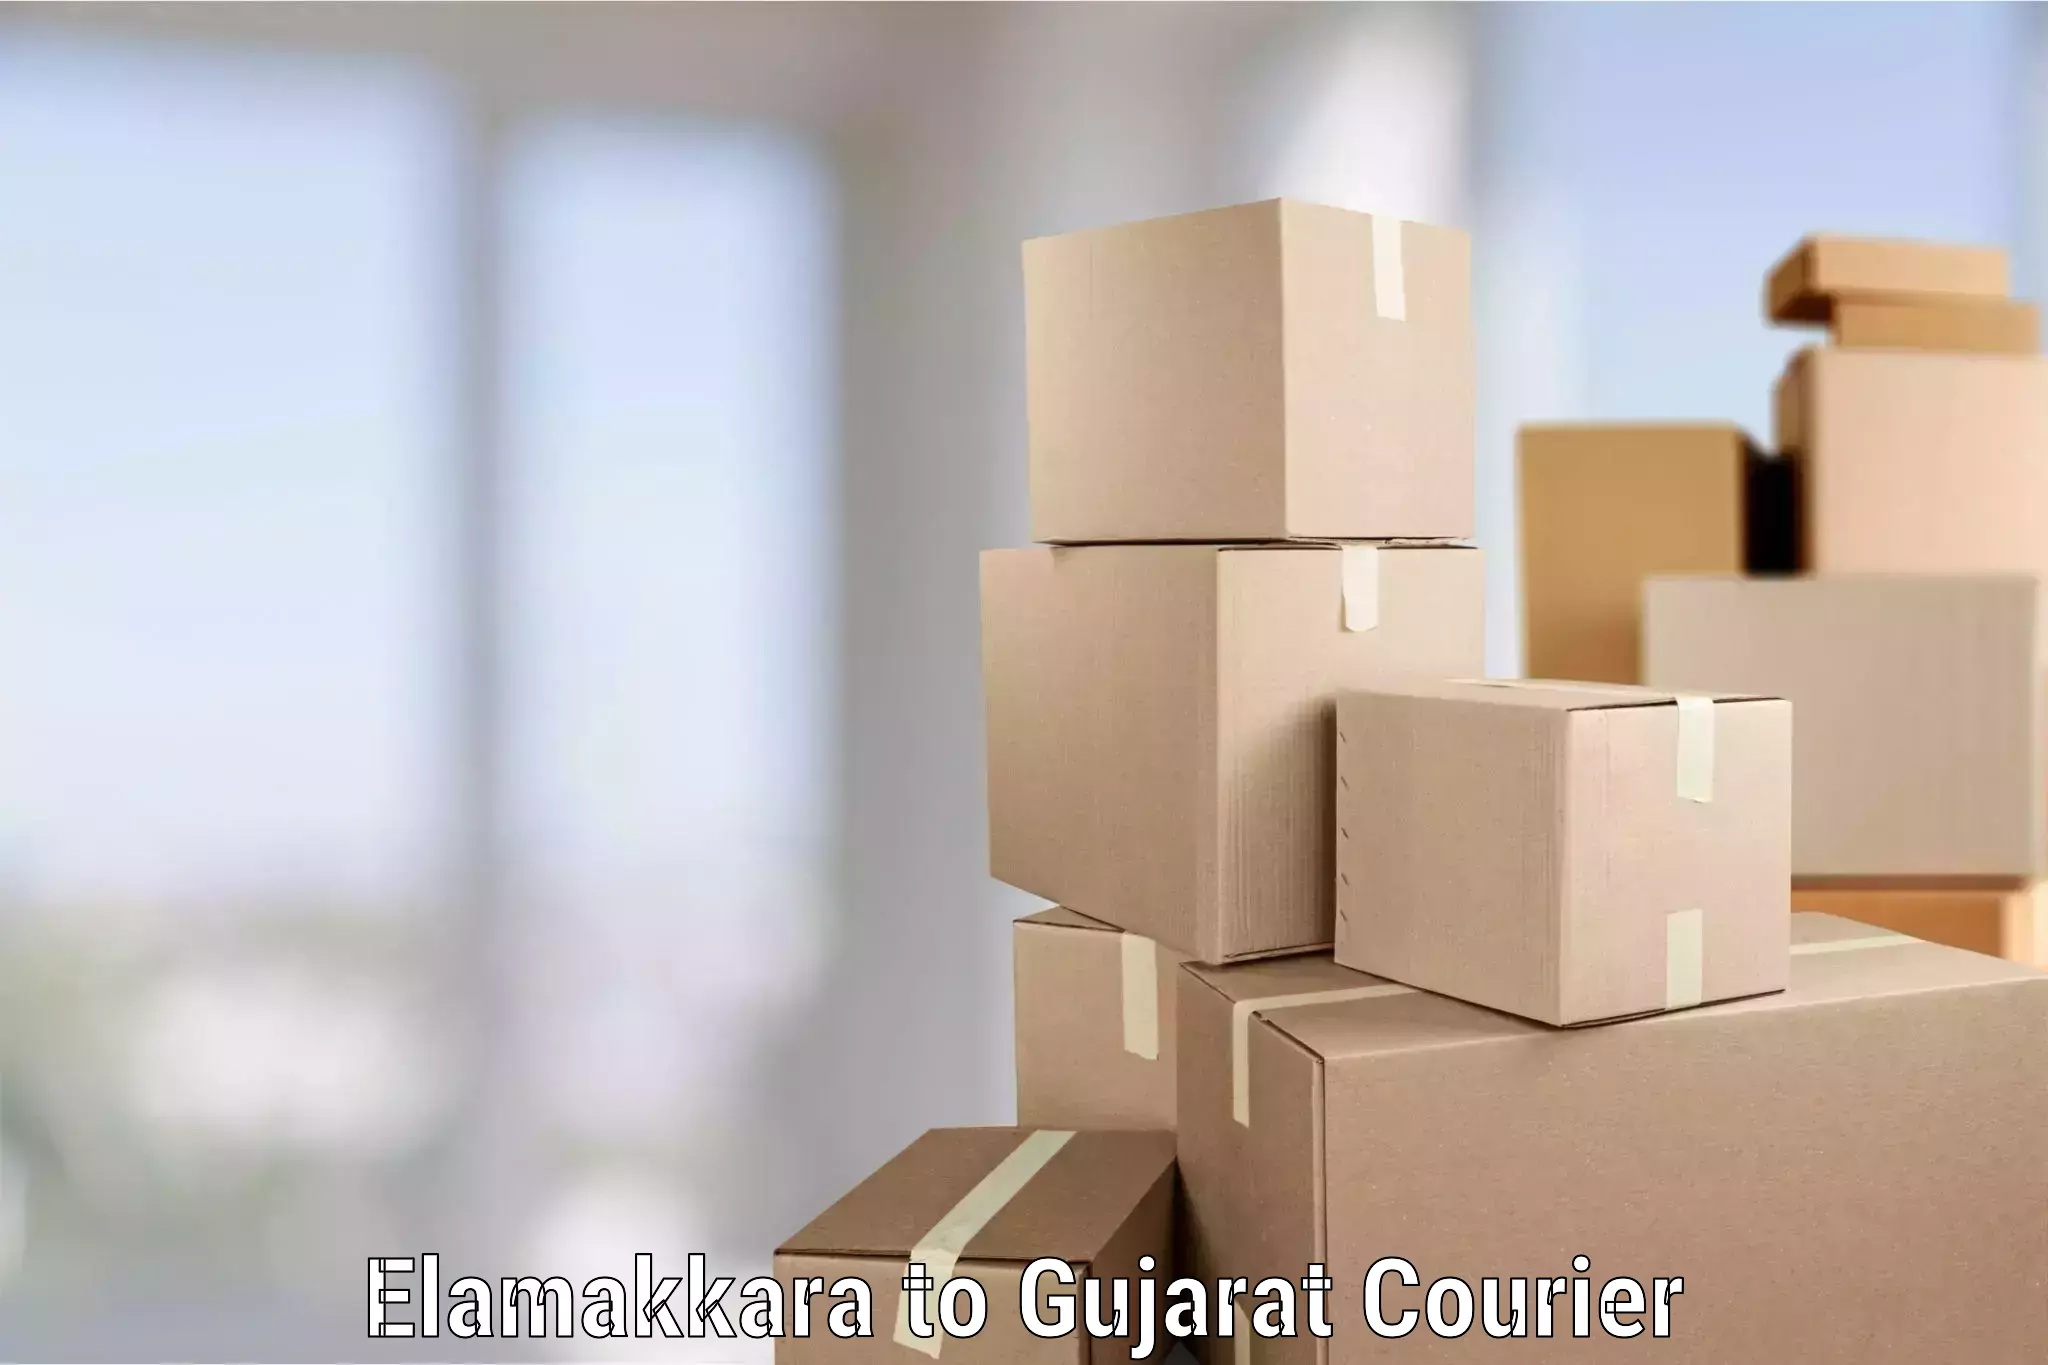 Professional moving assistance Elamakkara to Patan Gujarat